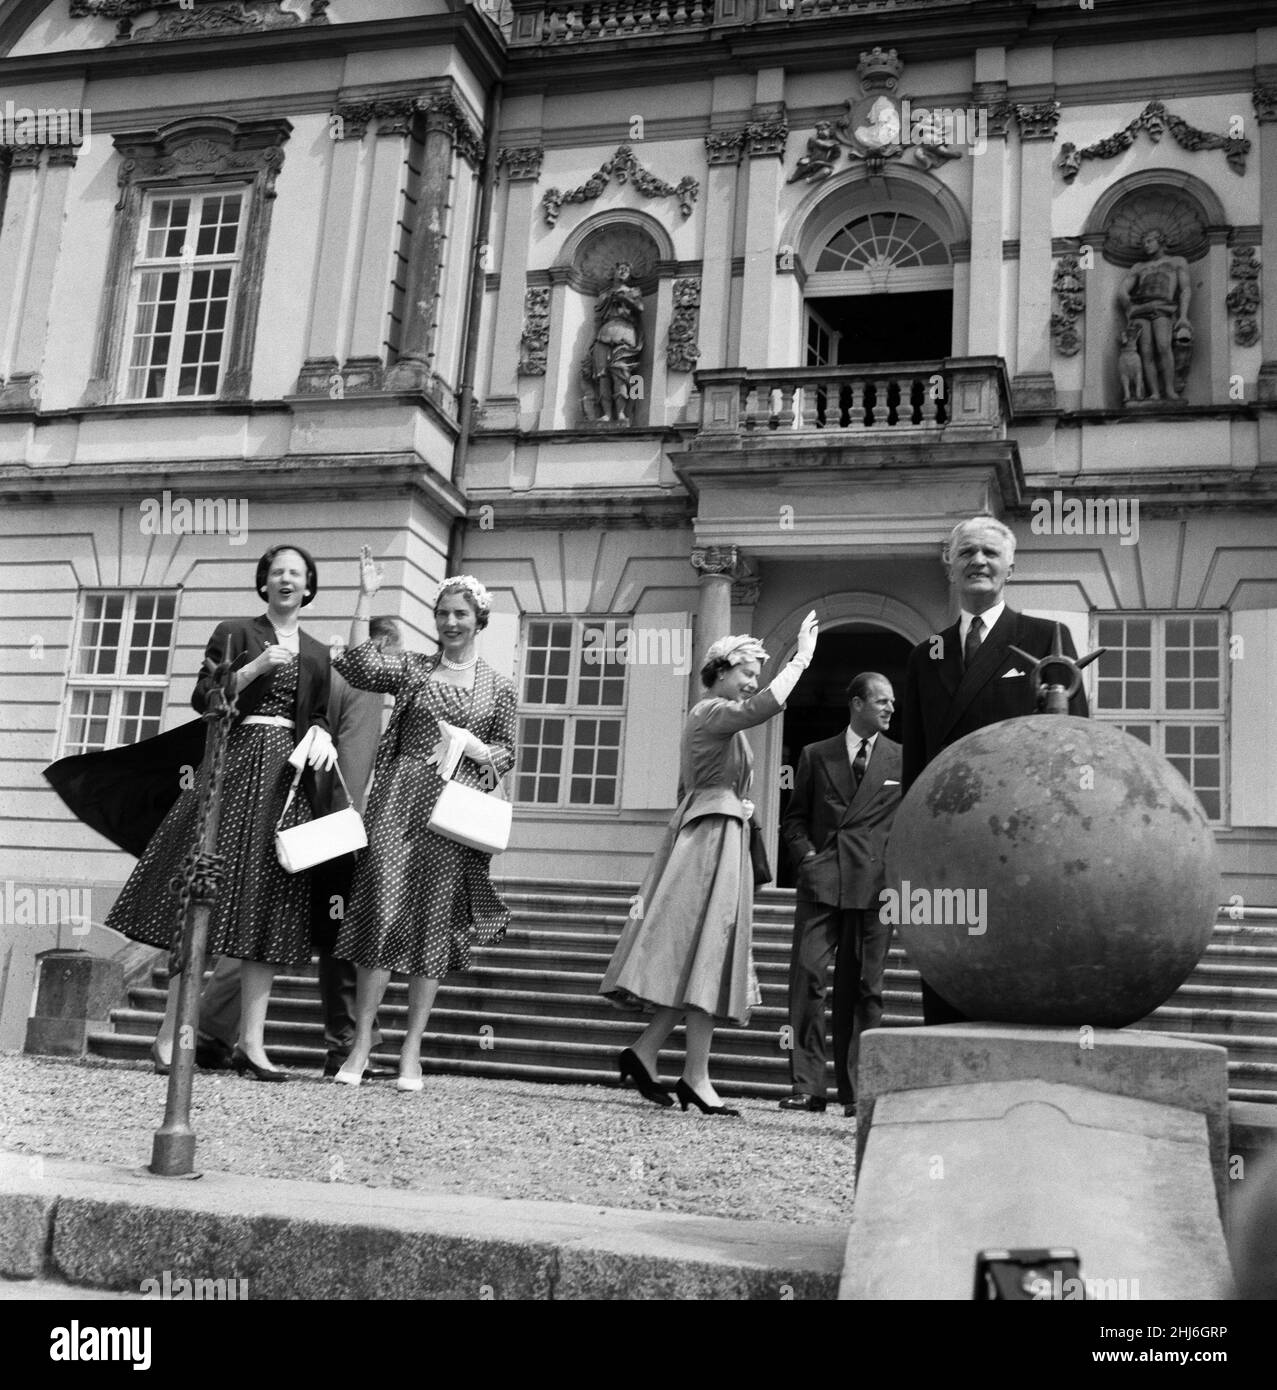 Königin Elizabeth II. Und Prinz Philip, Herzog von Edinburgh während ihres Staatsbesuchs in Dänemark. Im Hermitage Hunting Lodge, Prinzessin Margrethe, Königin Ingrid, Königin Elizabeth II. Und Prinz Philip. Mai 1957. Stockfoto